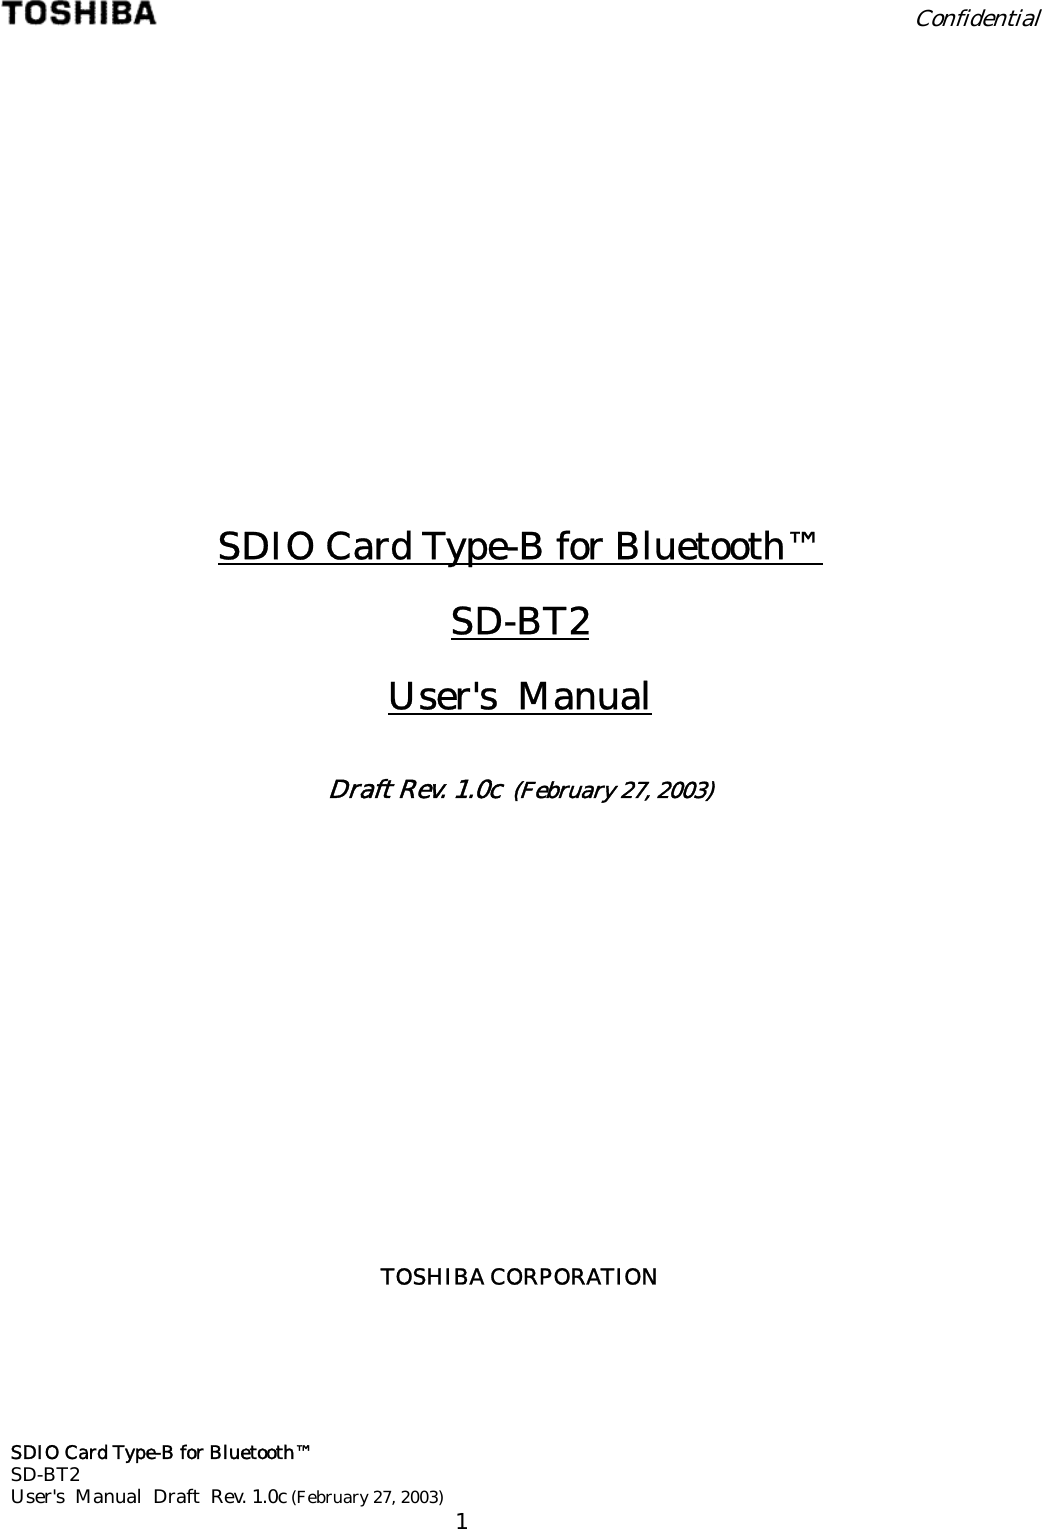  Confidential  SDIO Card Type-B for Bluetooth™ SD-BT2 User&apos;s  Manual  Draft  Rev. 1.0c (February 27, 2003)      1              SDIO Card Type-B for Bluetooth™ SD-BT2 User&apos;s  Manual  Draft Rev. 1.0c  (February 27, 2003)             TOSHIBA CORPORATION